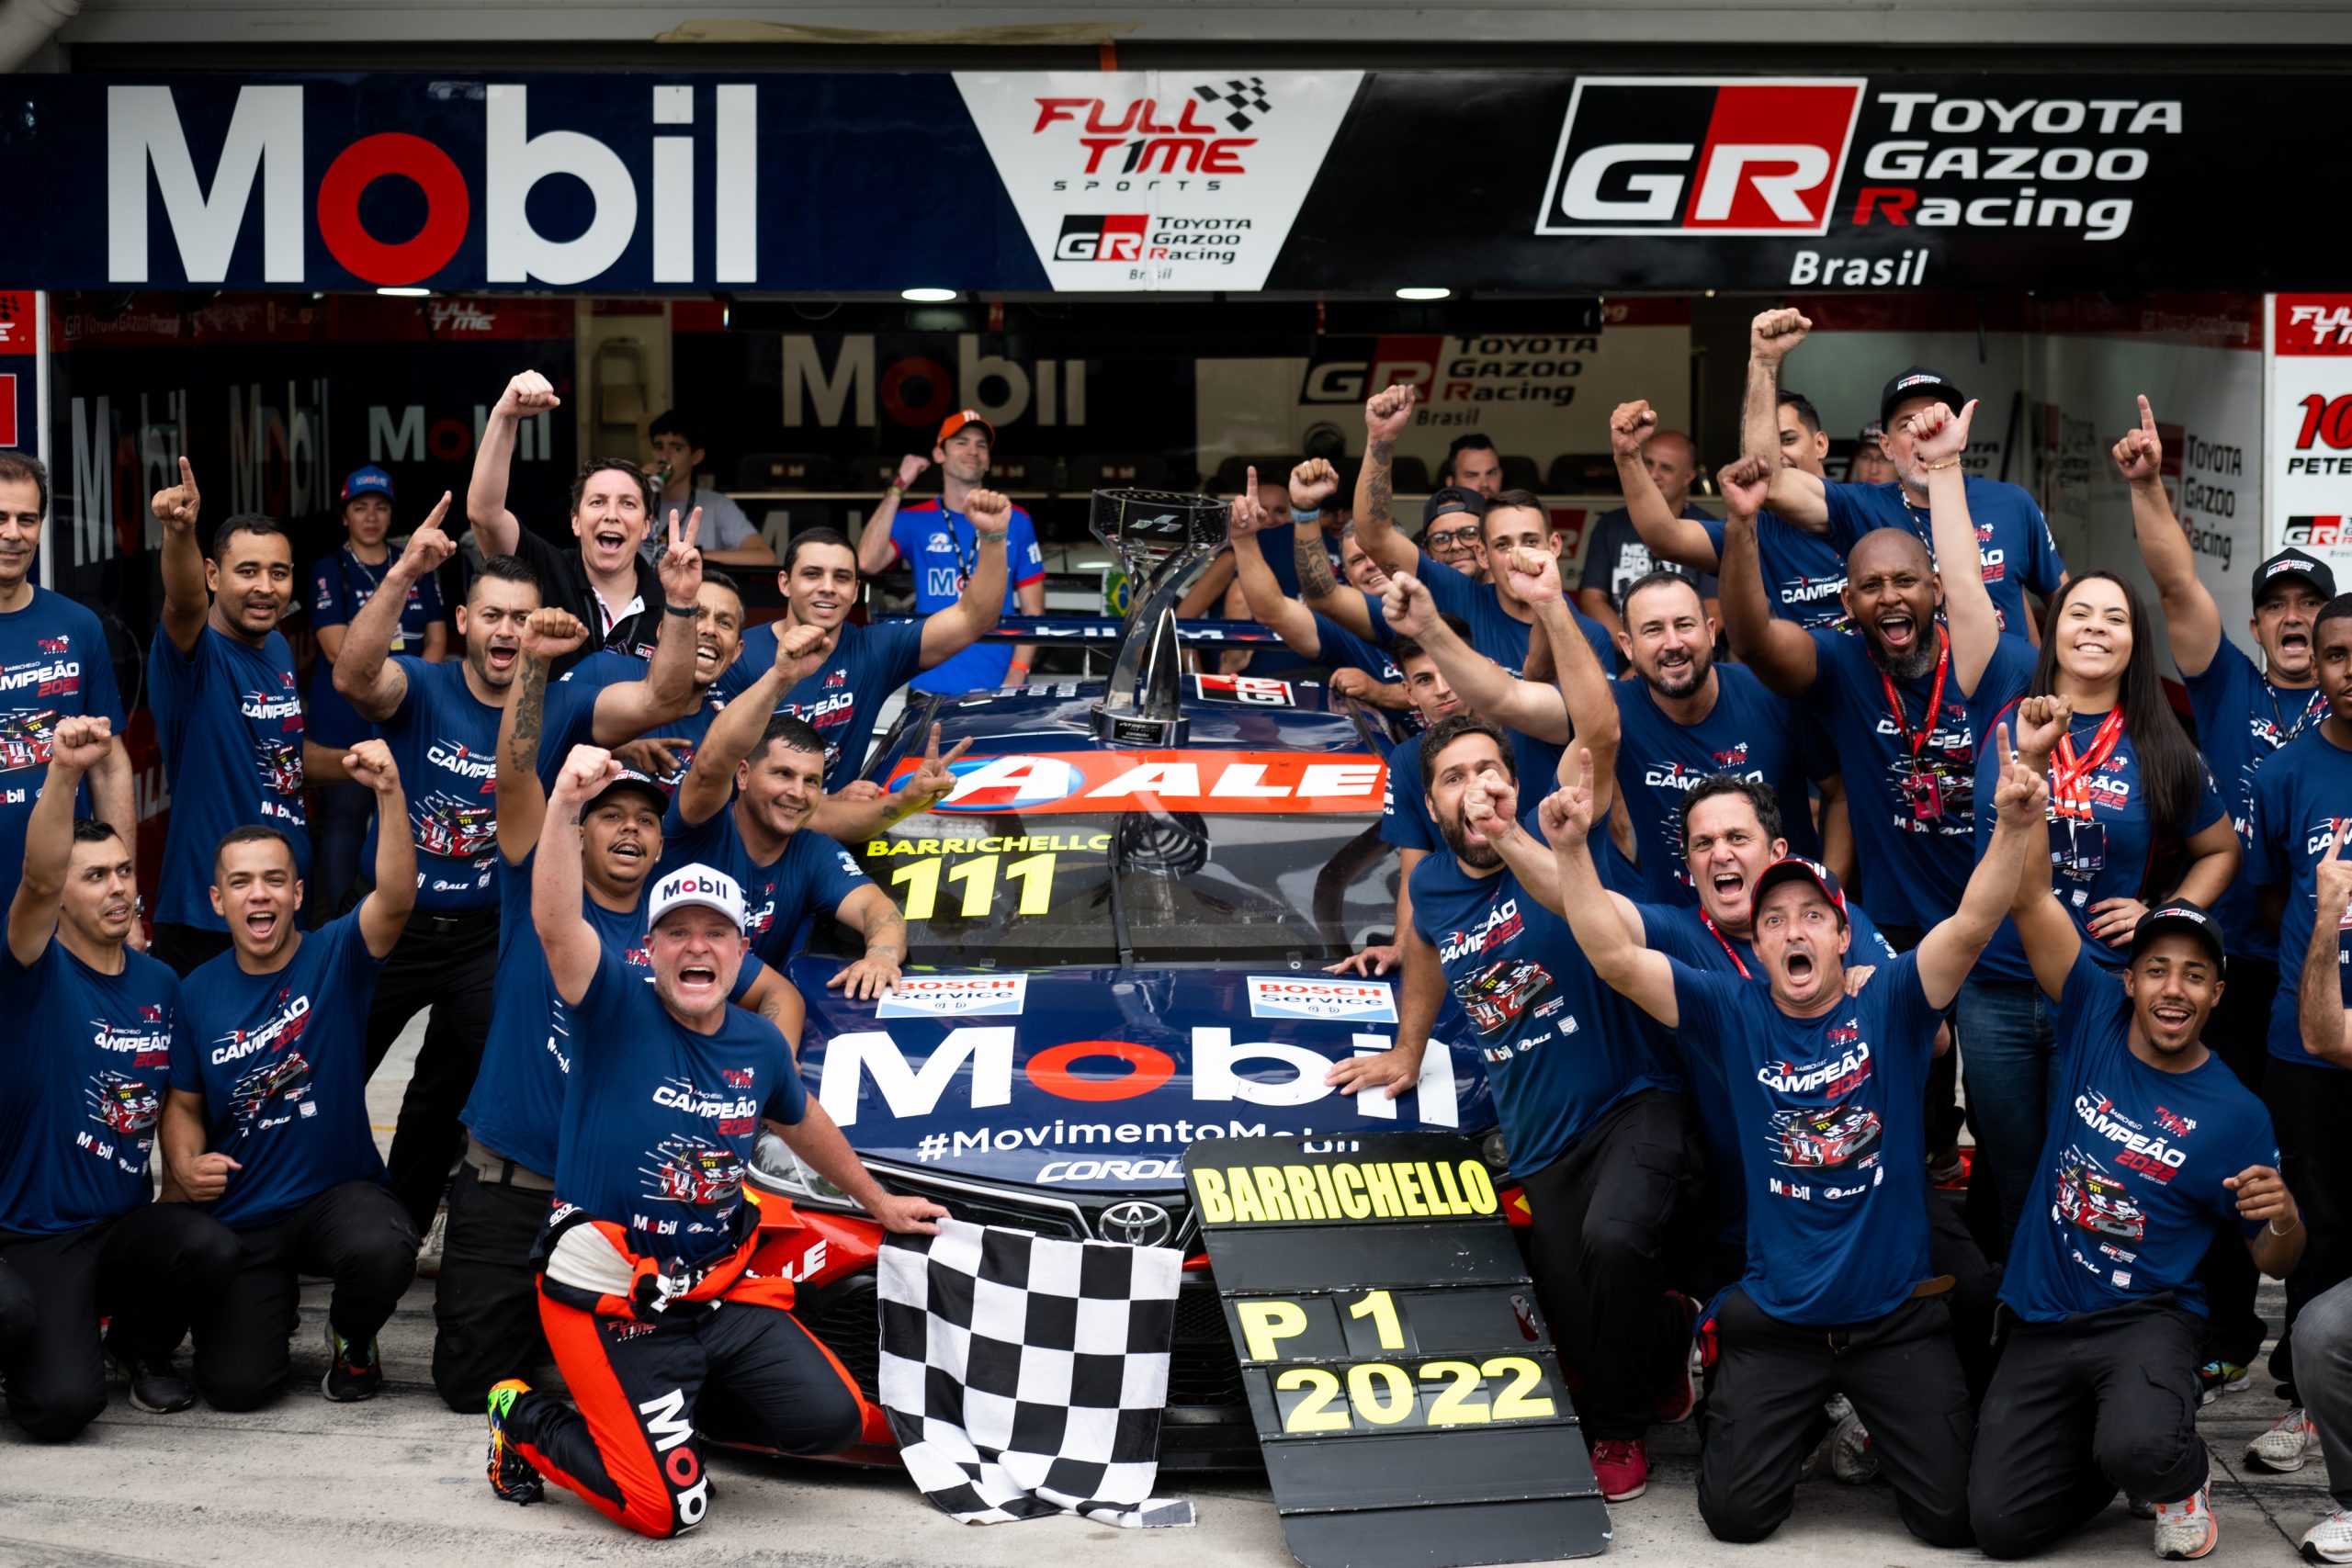 Toyota GAZOO Racing conquista título da Stock Car pela primeira vez